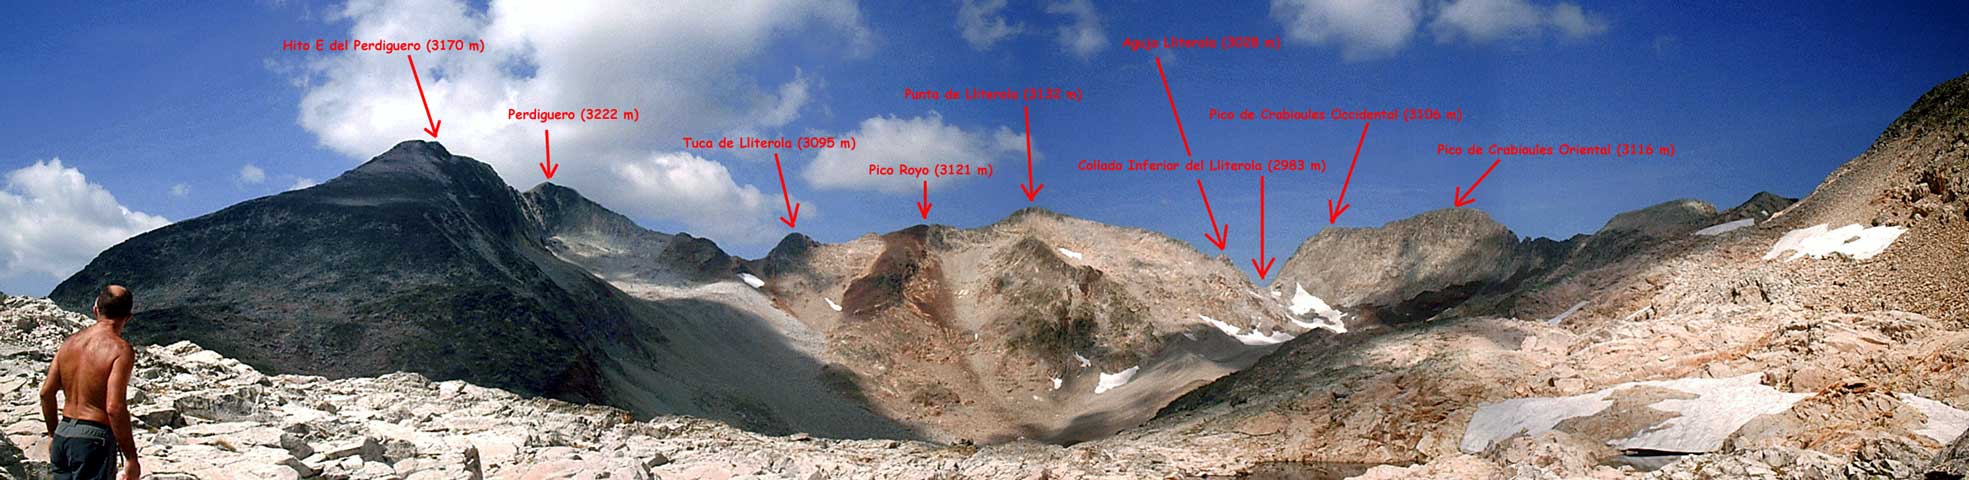 Ibón del Lliterola (2730 m), Hito E del Perdiguero (3170 m), Perdiguero (3222 m), Tuca de Lliterola (3095 m), Pico Royo (3121 m), Punta de Lliterola (3132 m), Aguja de Lliterola (3028 m), y los majestuosos y magníficos picos de los Crabioules Occidental (